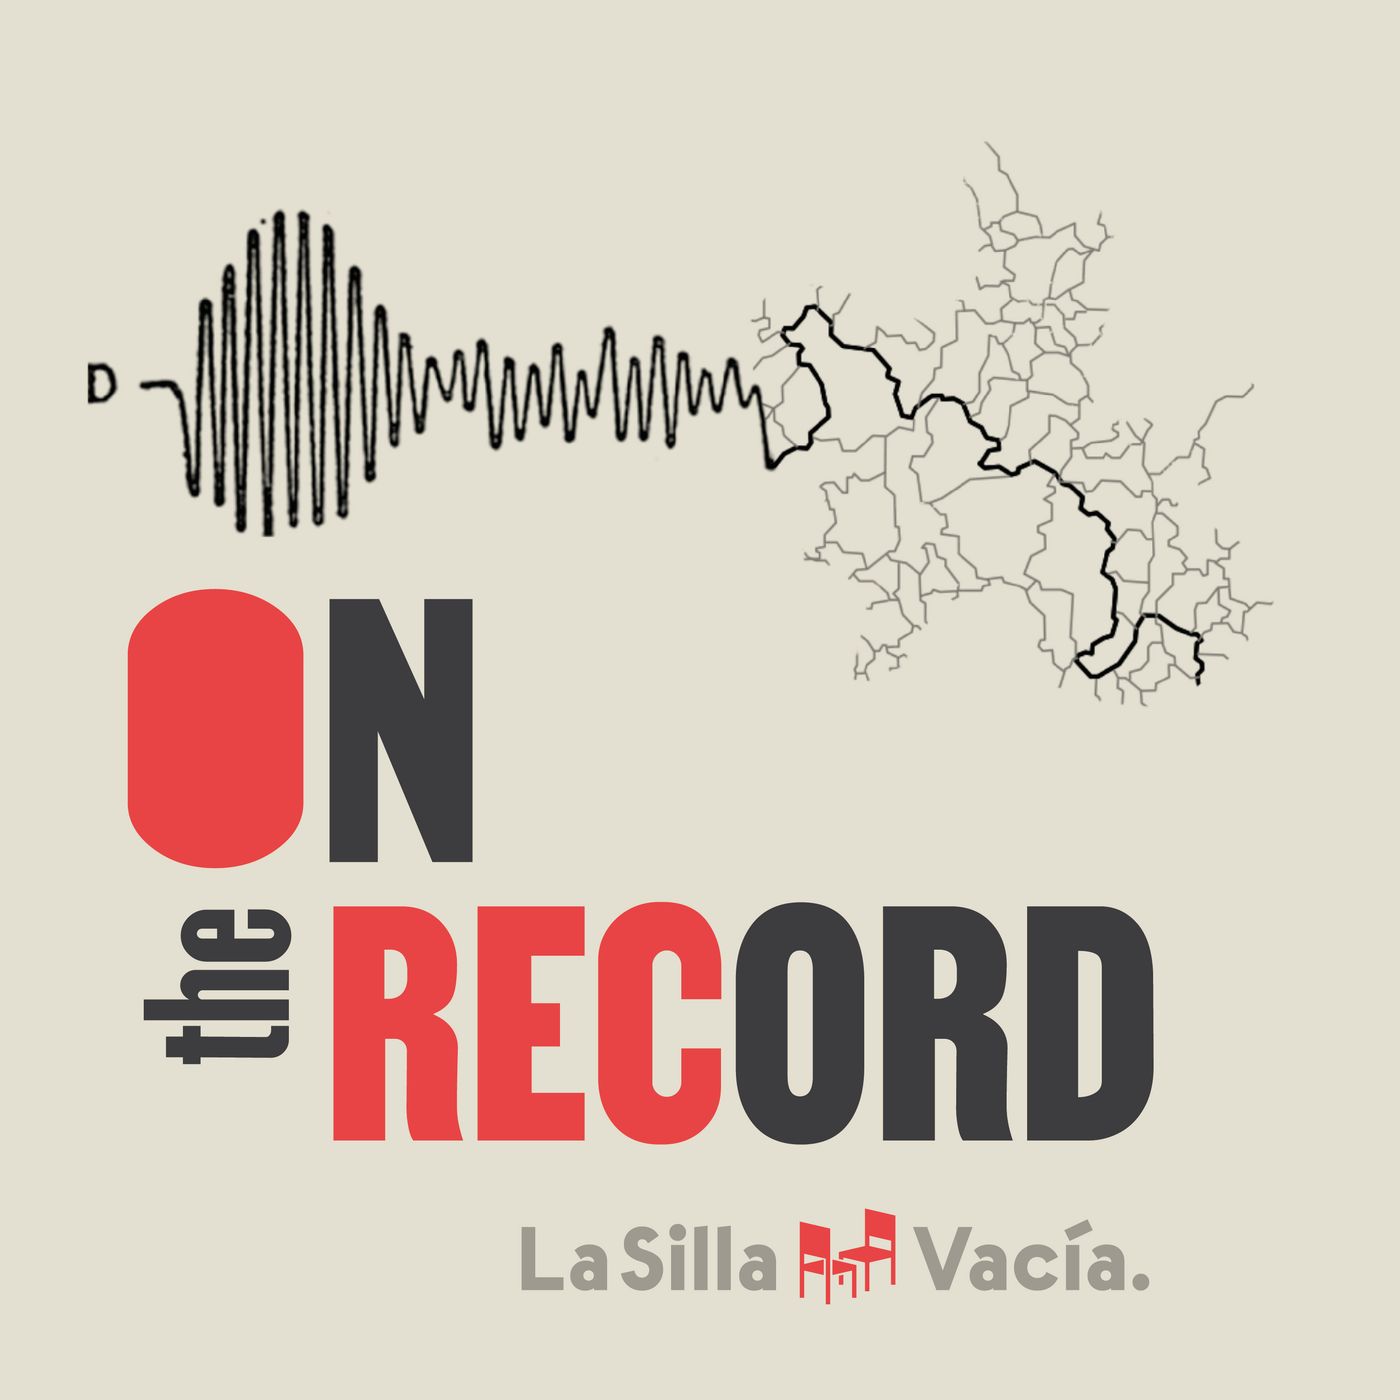 La Silla: On The Record